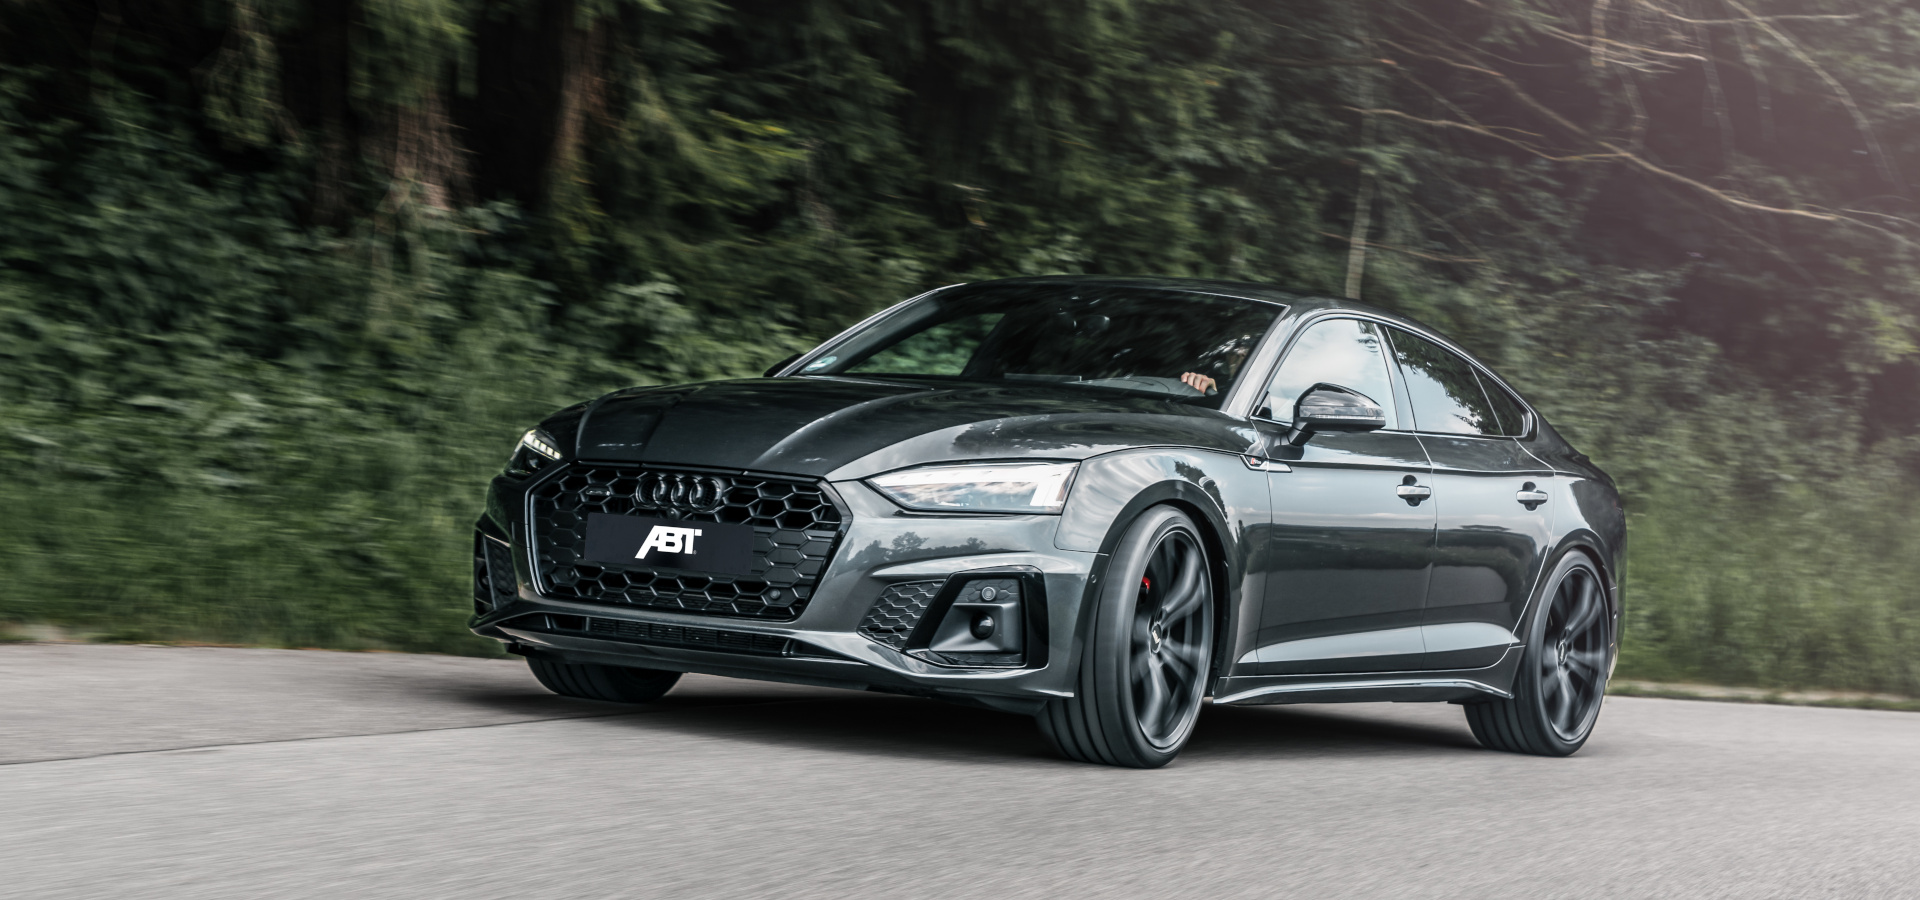 Der Audi A5 - Der sportliche unter den Mittelklasseautos - Blog